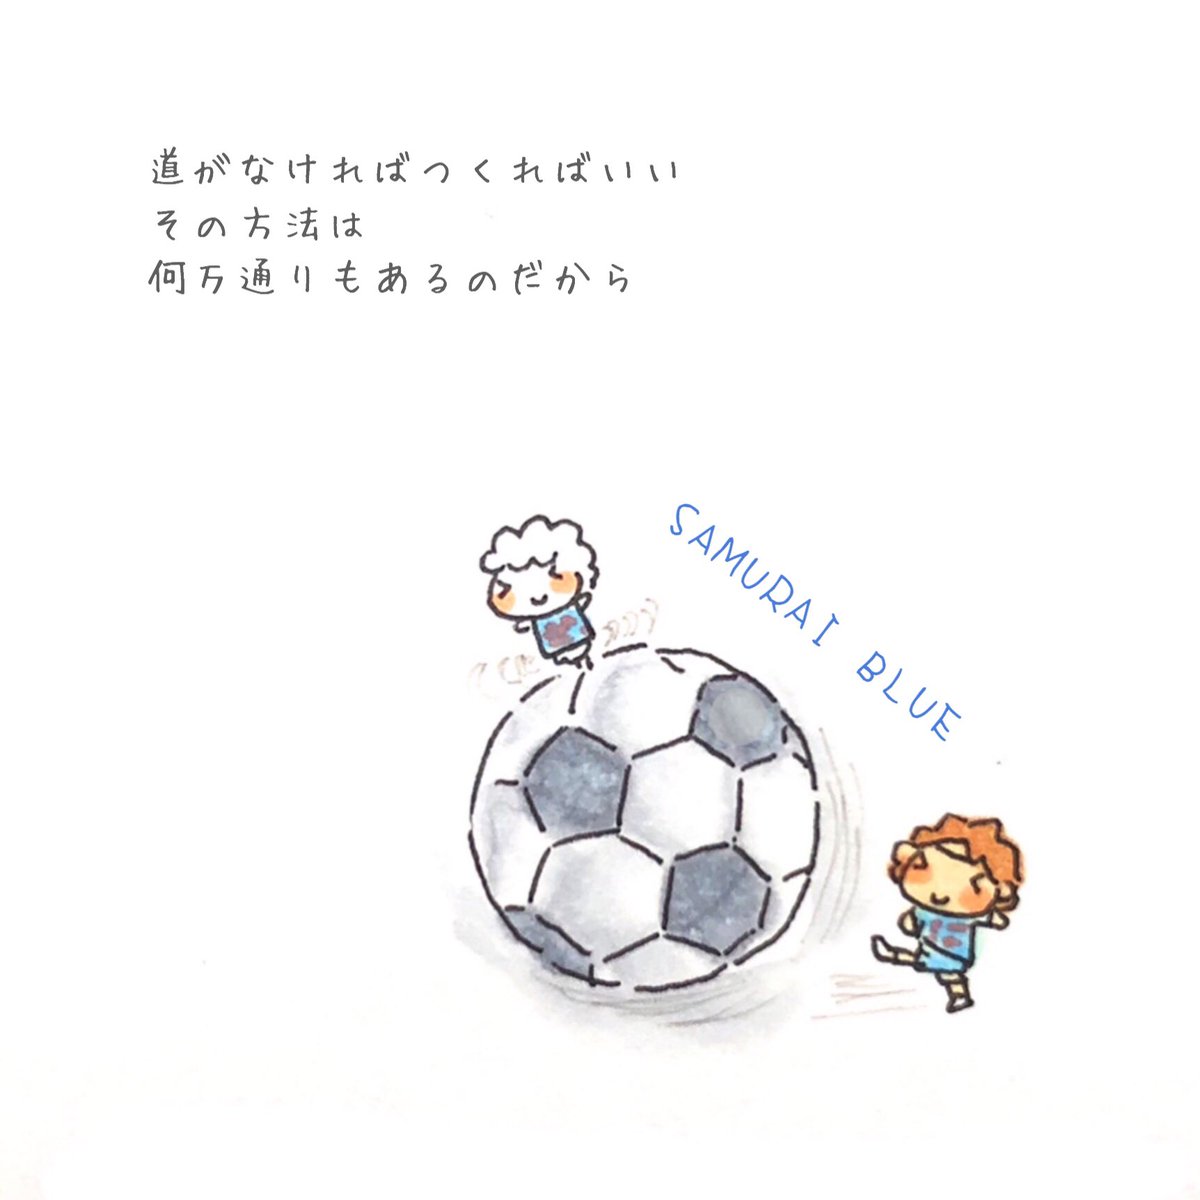 Ituami イツエミ スポーツって 熱い気持ちを思い出させるよね ひつちゃんは 玉乗り サッカー 日本代表 サムライブルー カメルーン戦 ユニホームかわいい みんなカッコイイ 感動 イラストかきます イラスト いらすと 手描き